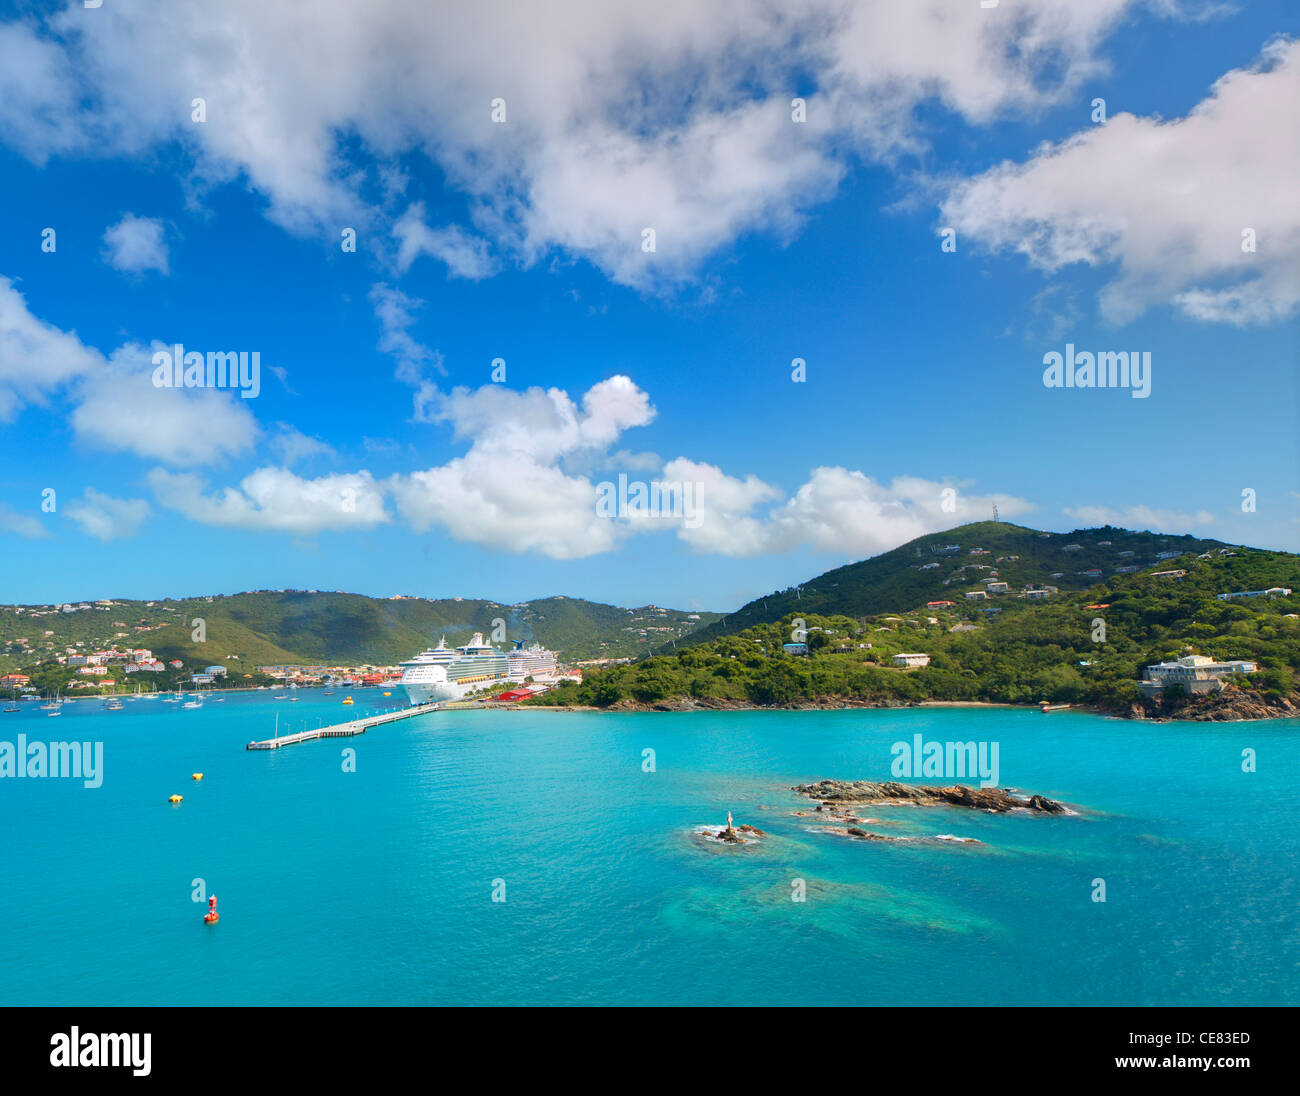 Avis de Charlotte Amalie, St Thomas, Îles Vierges des États-Unis. Banque D'Images